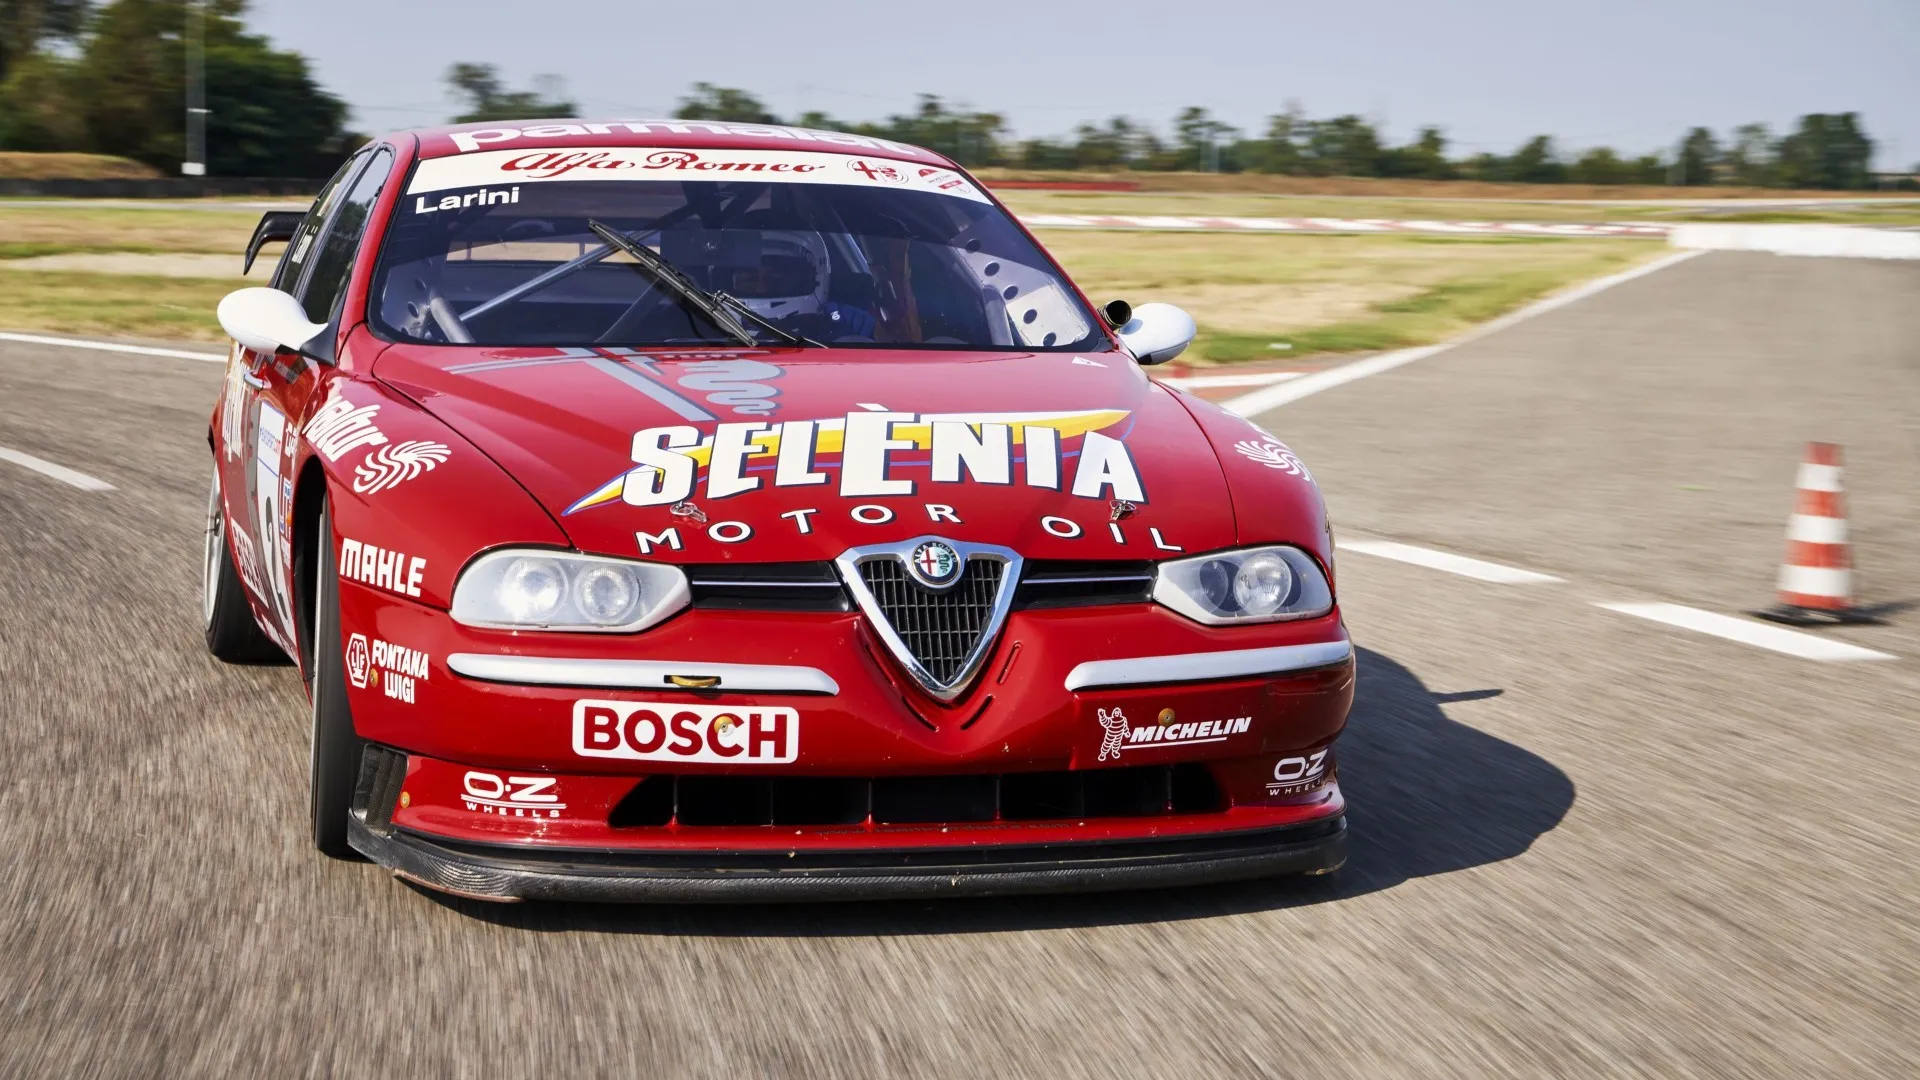 Coche del día: Alfa Romeo 156 D2